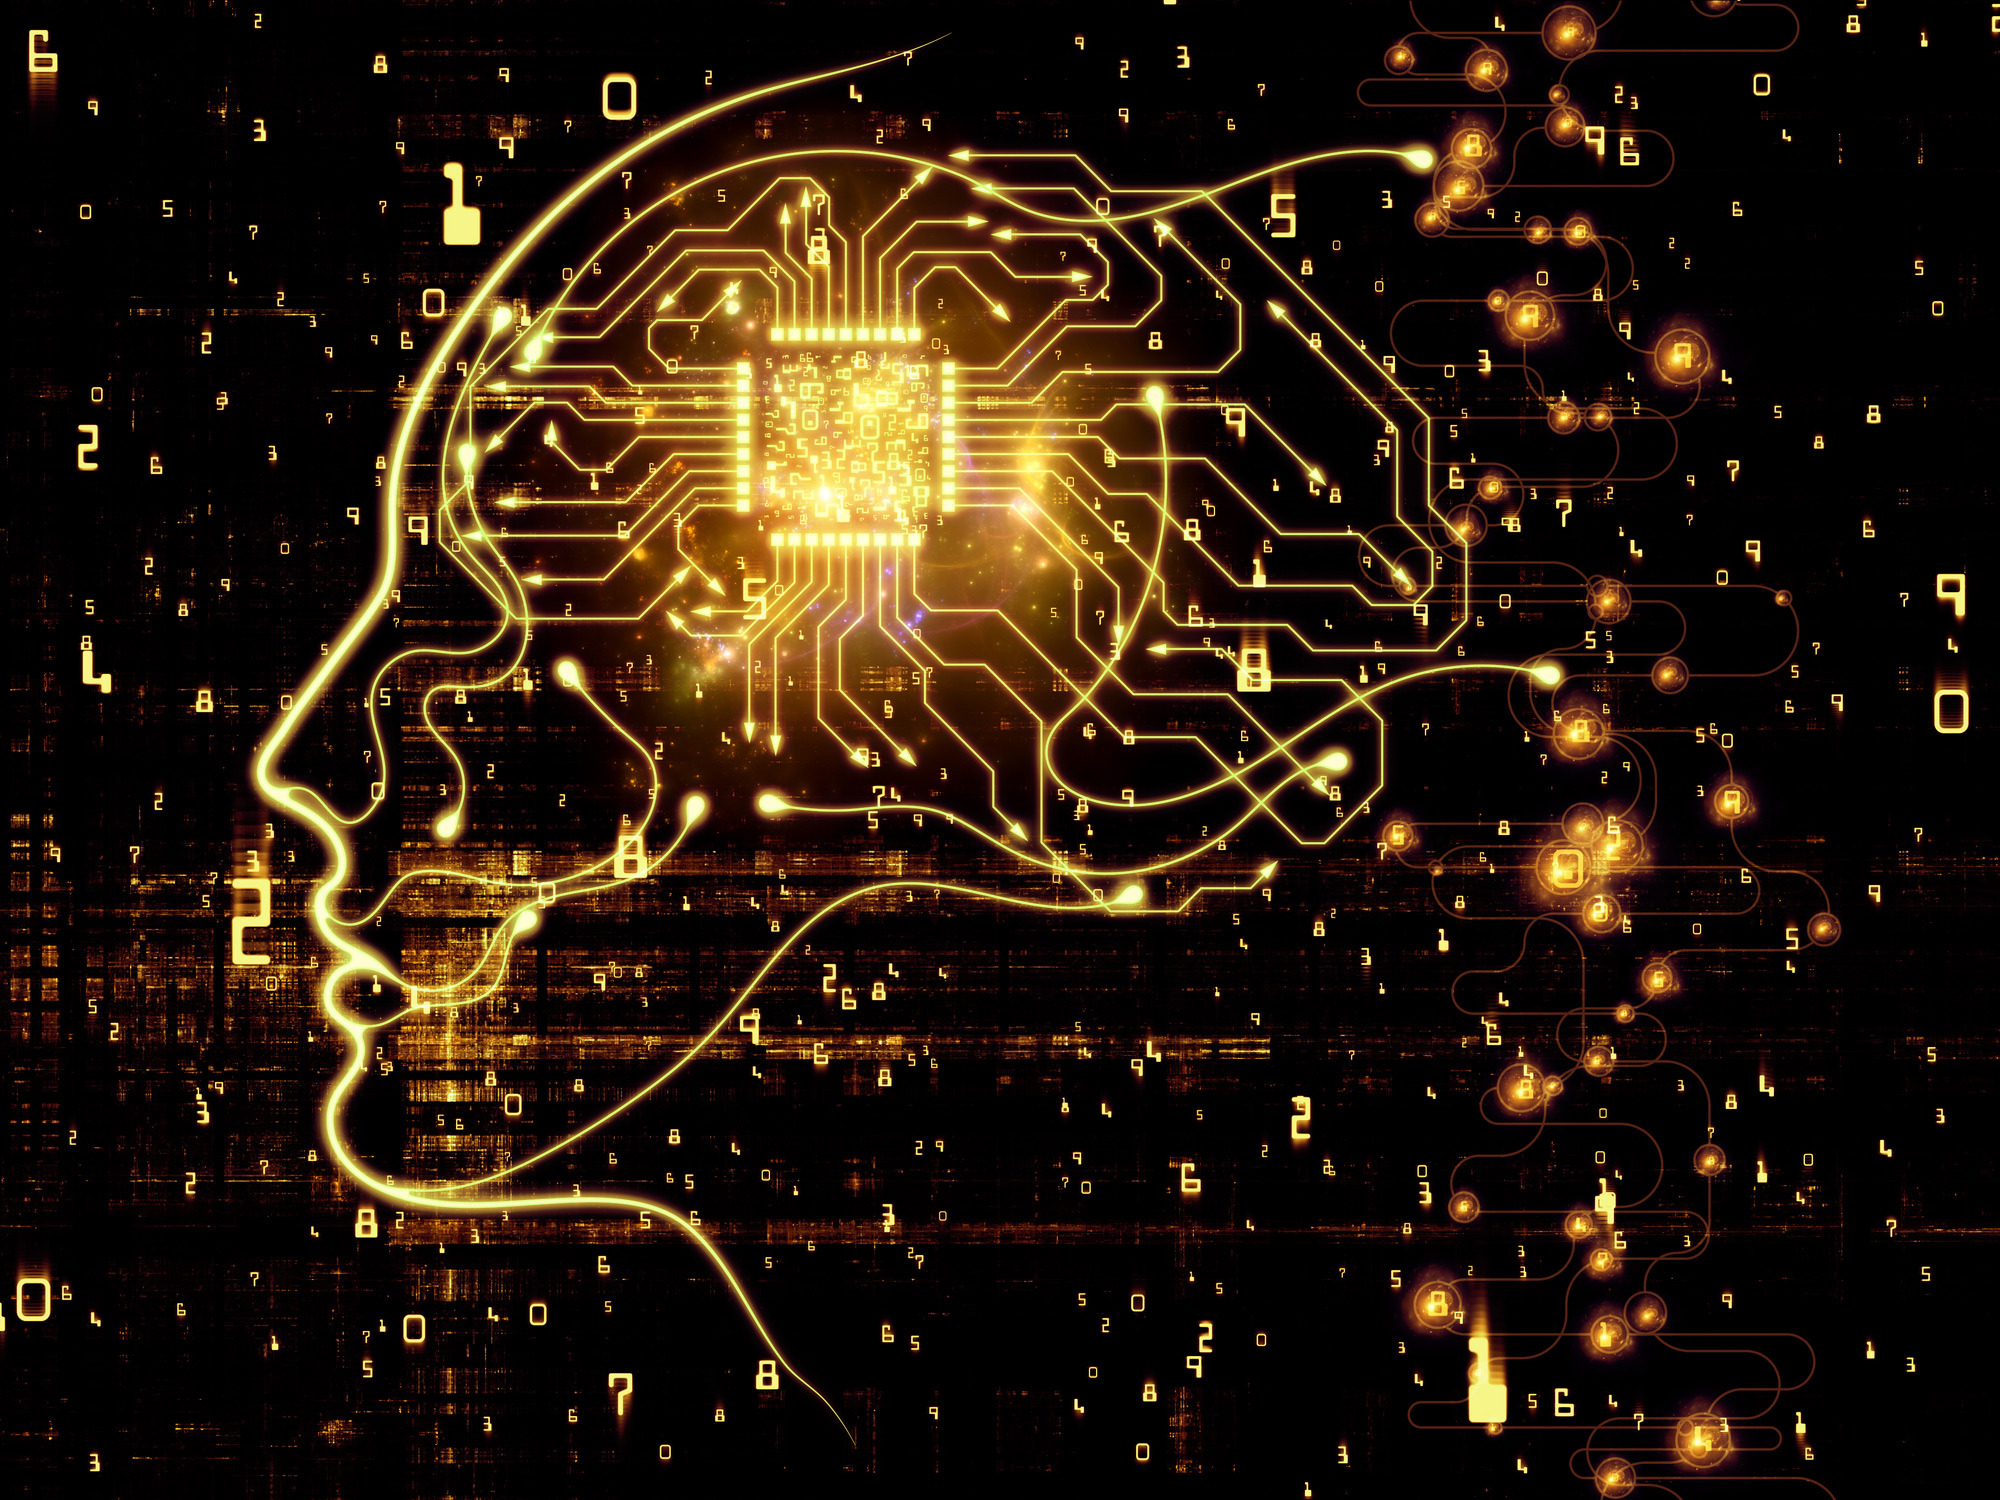 Brain core. Мозг компьютера. Искусственный интеллект. Компьютер и человеческий мозг. Нейронный чип.